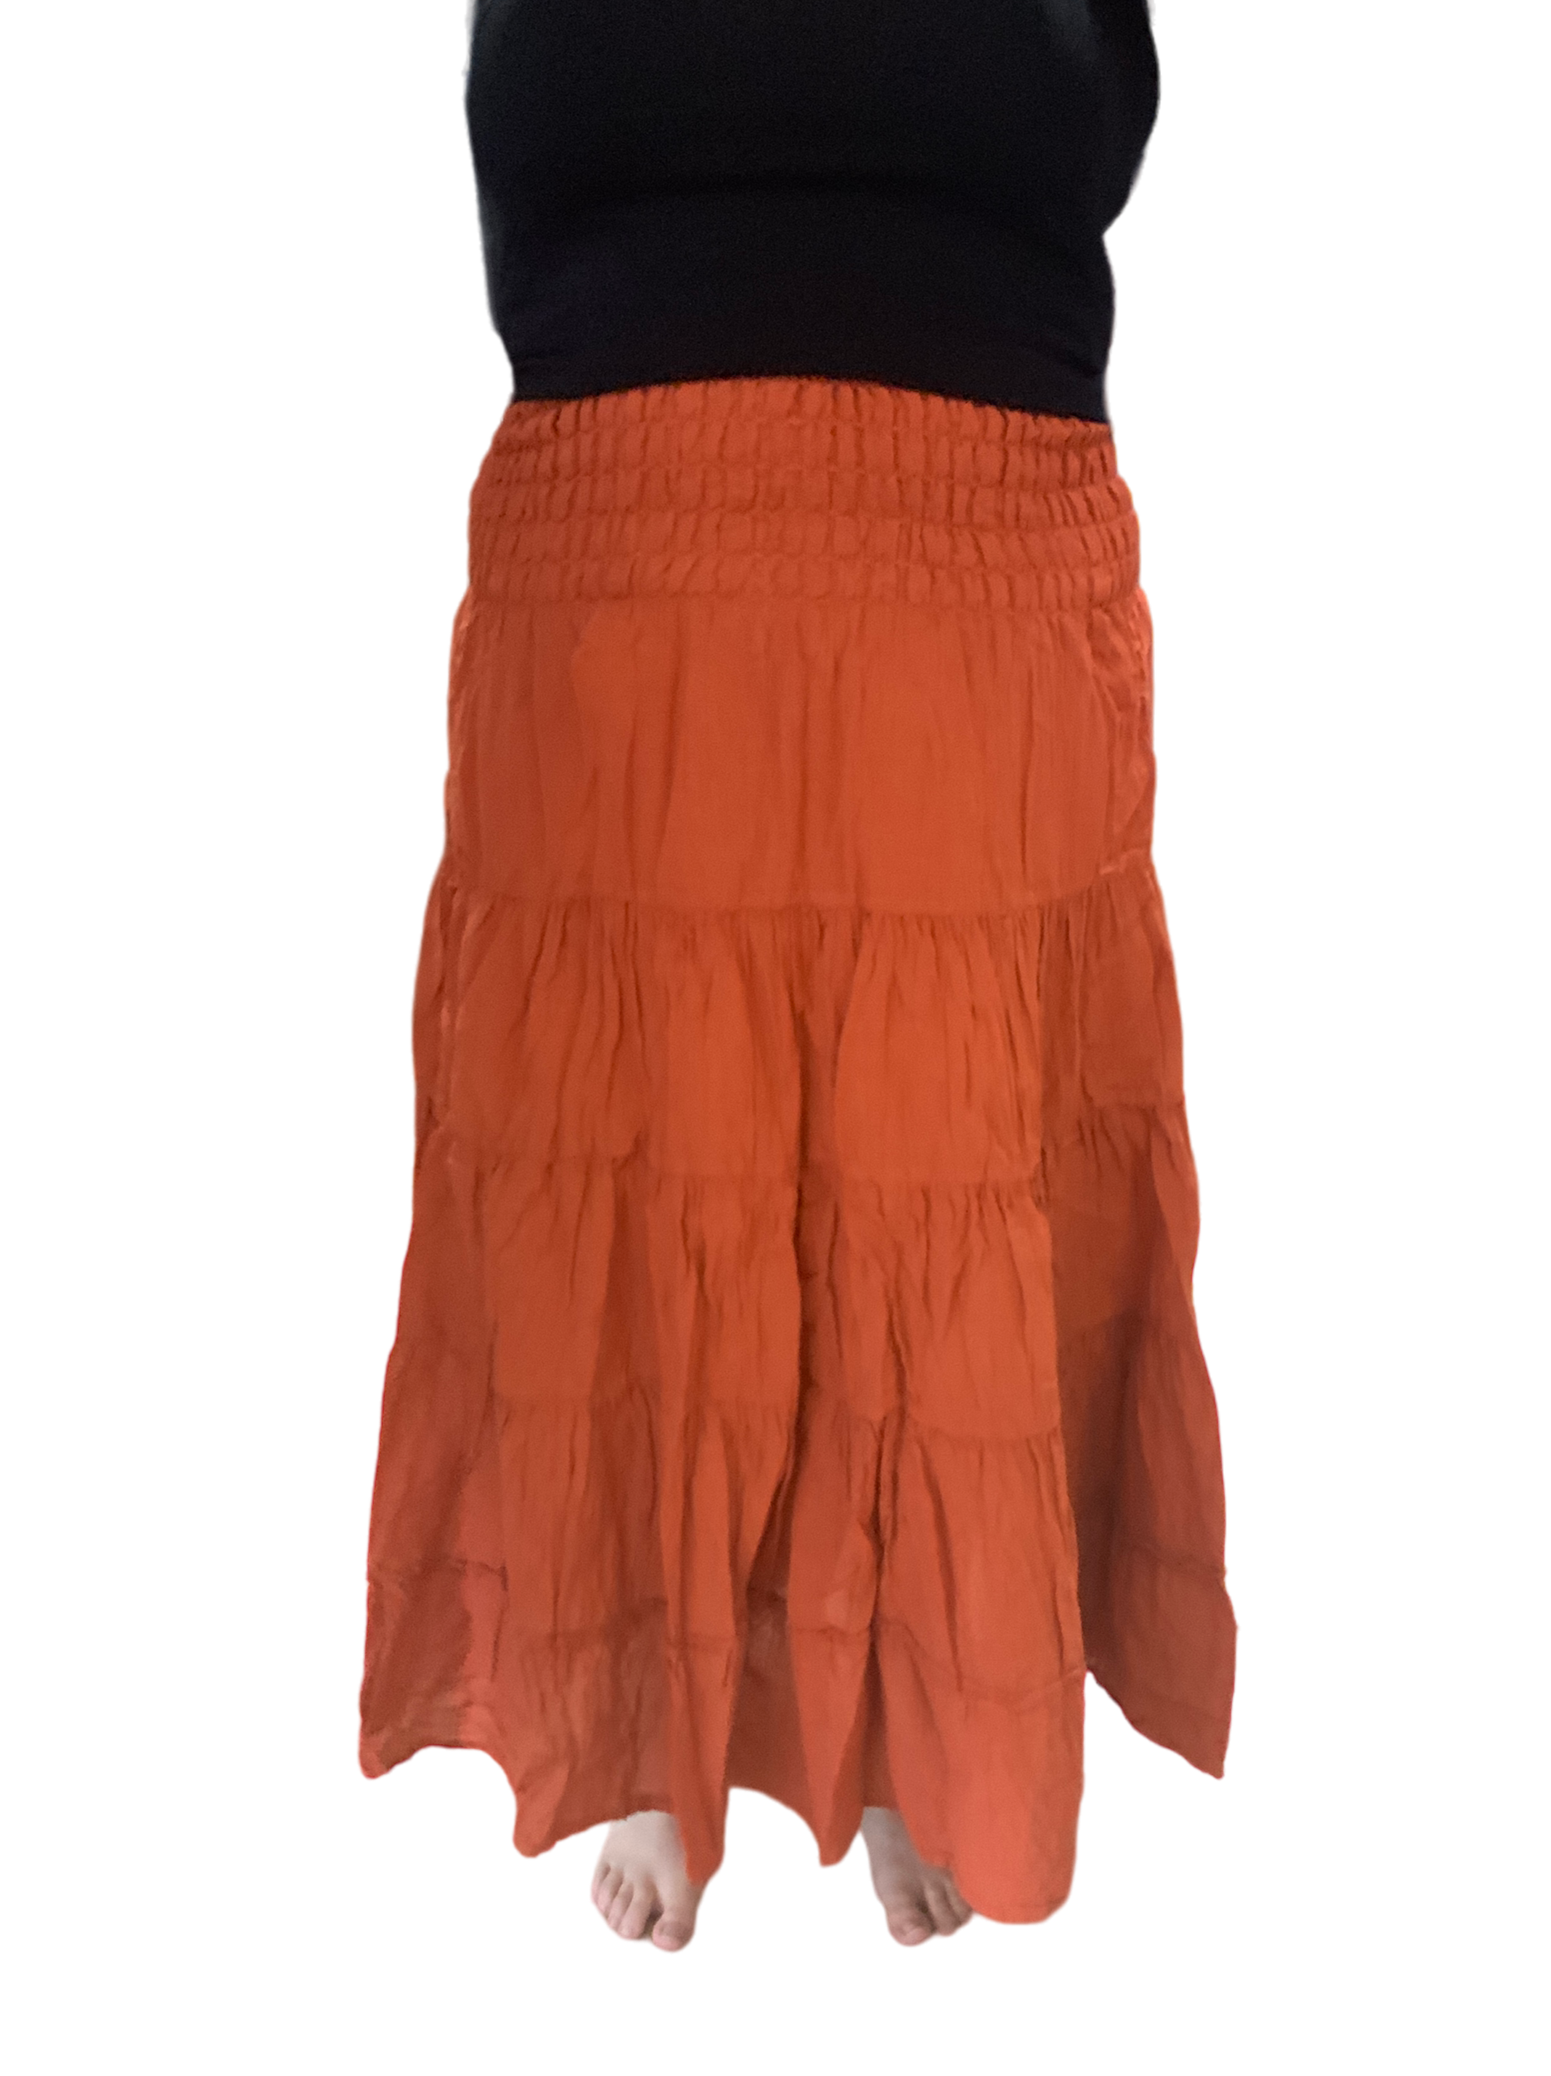 Burnt Orange Cotton Voile Tiered Skirt